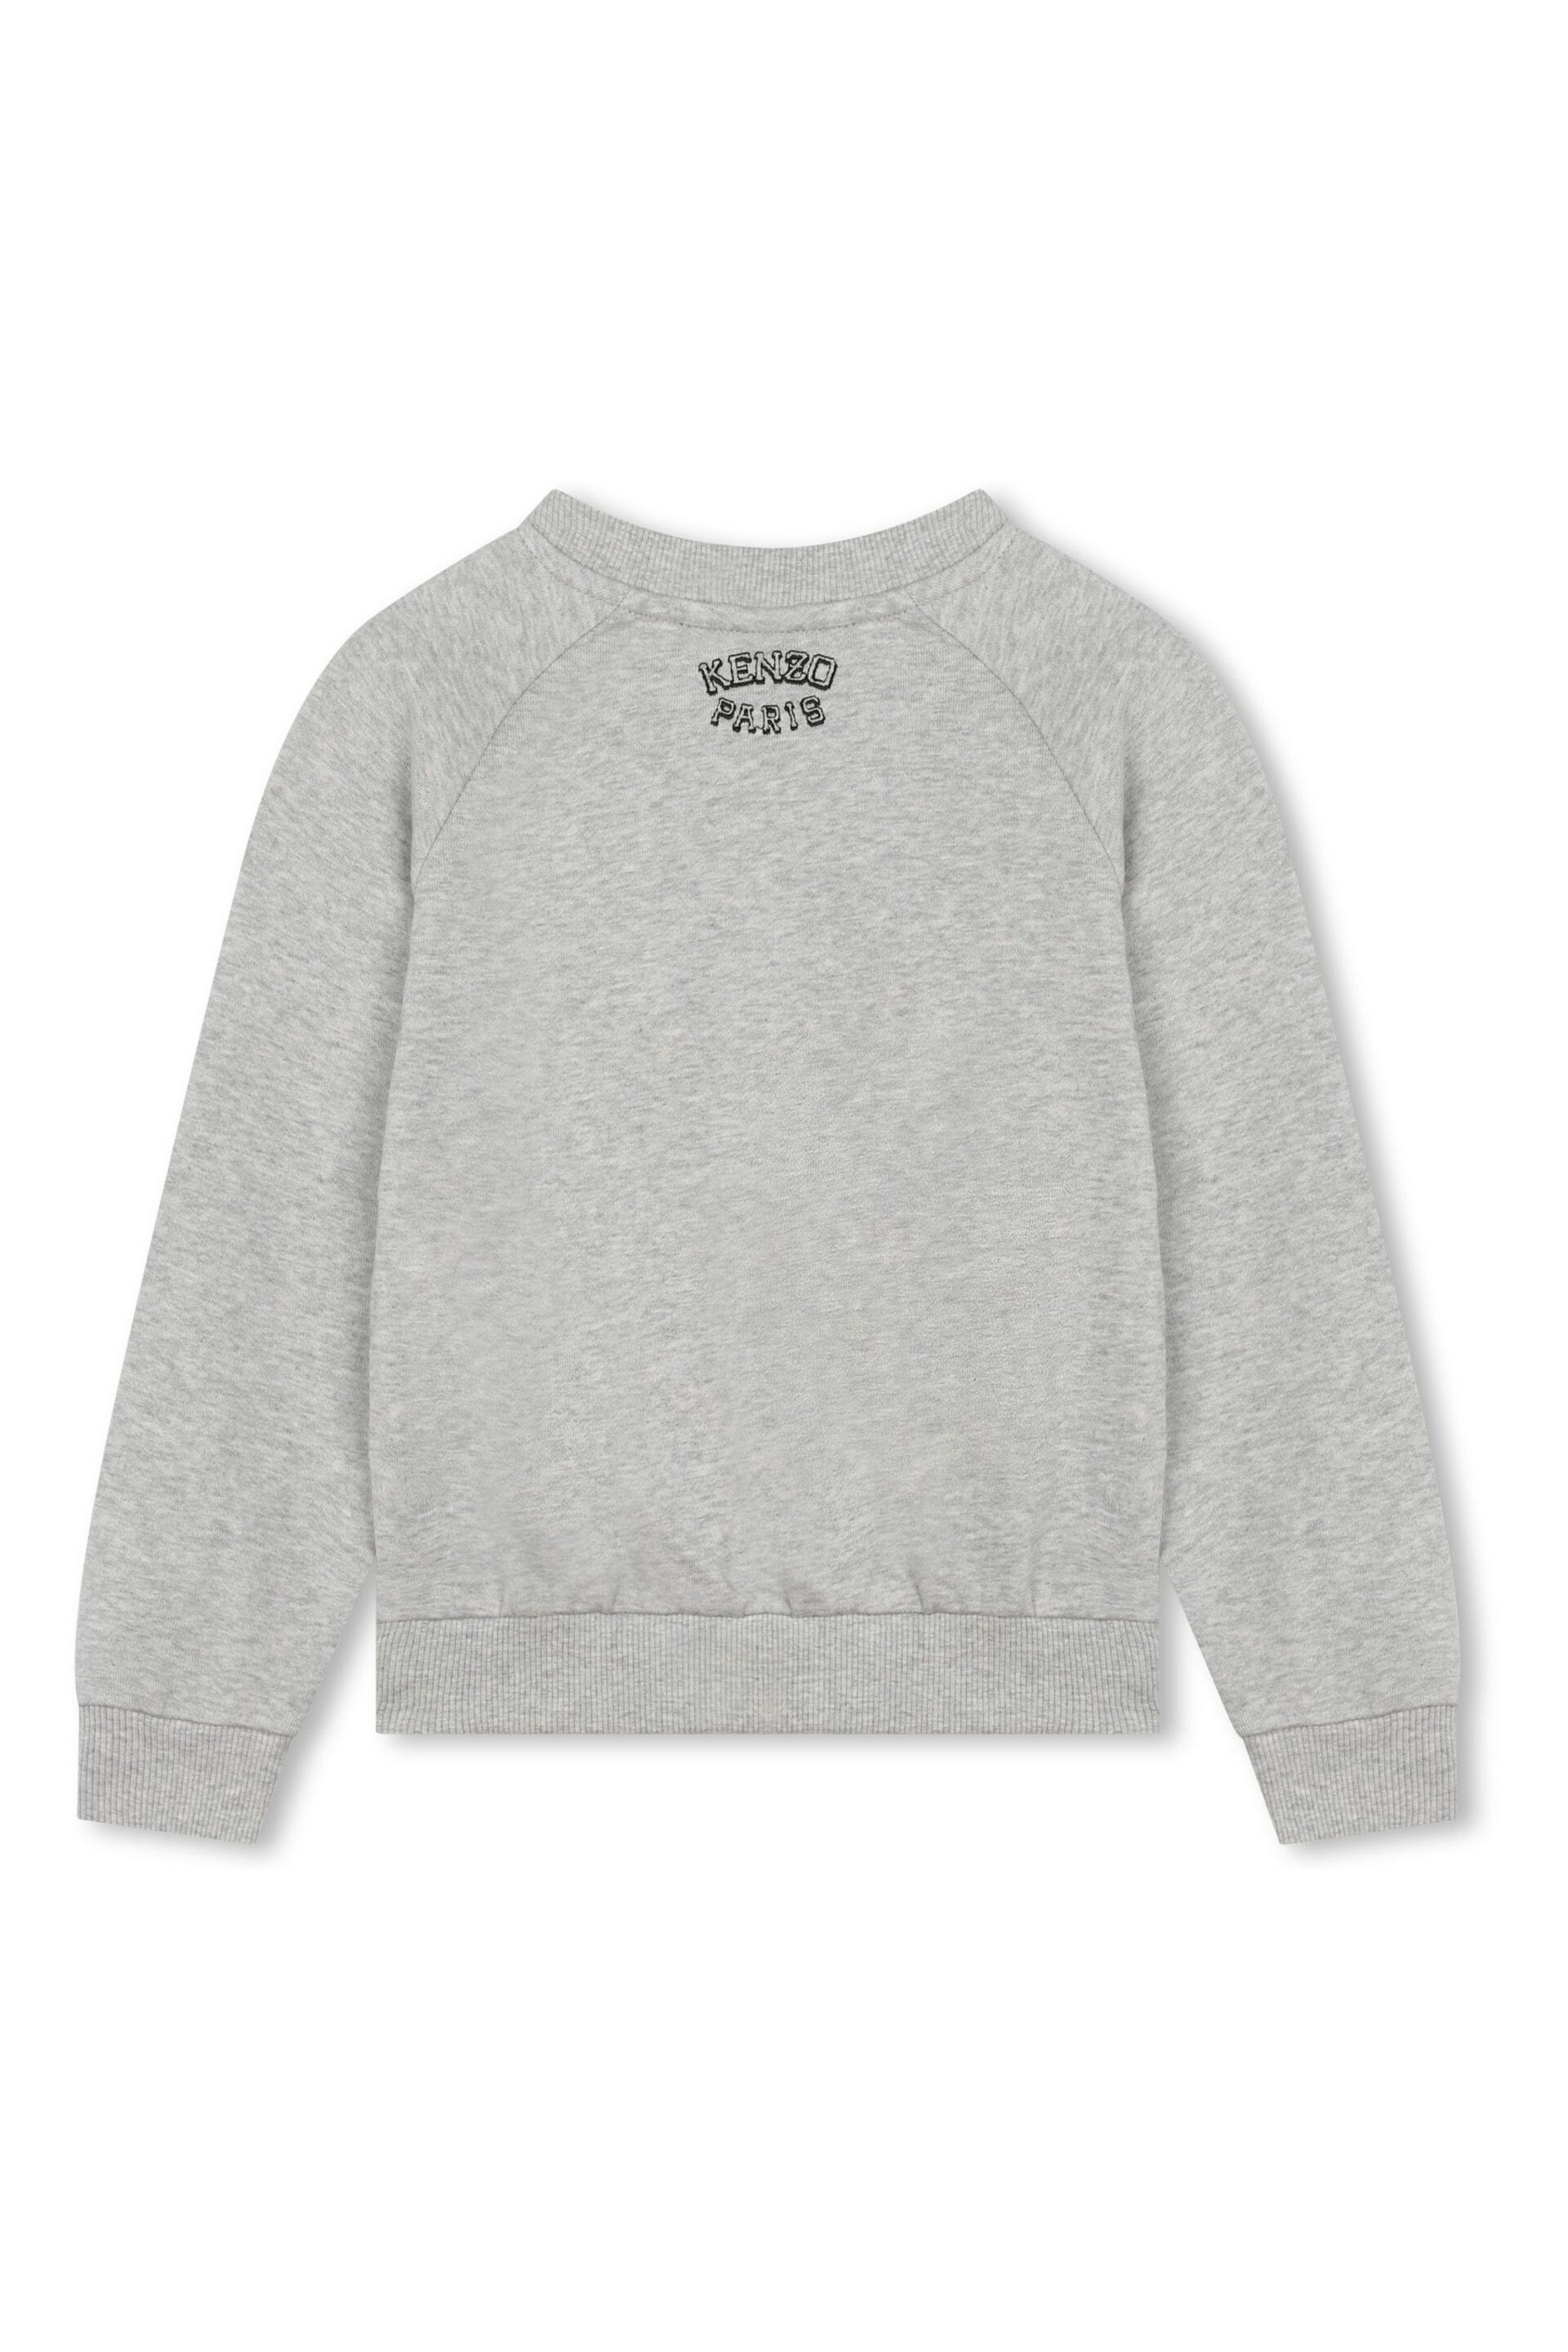 KENZO KIDS Grey Varsity Logo Crew Sweatshirt - Image 2 of 2